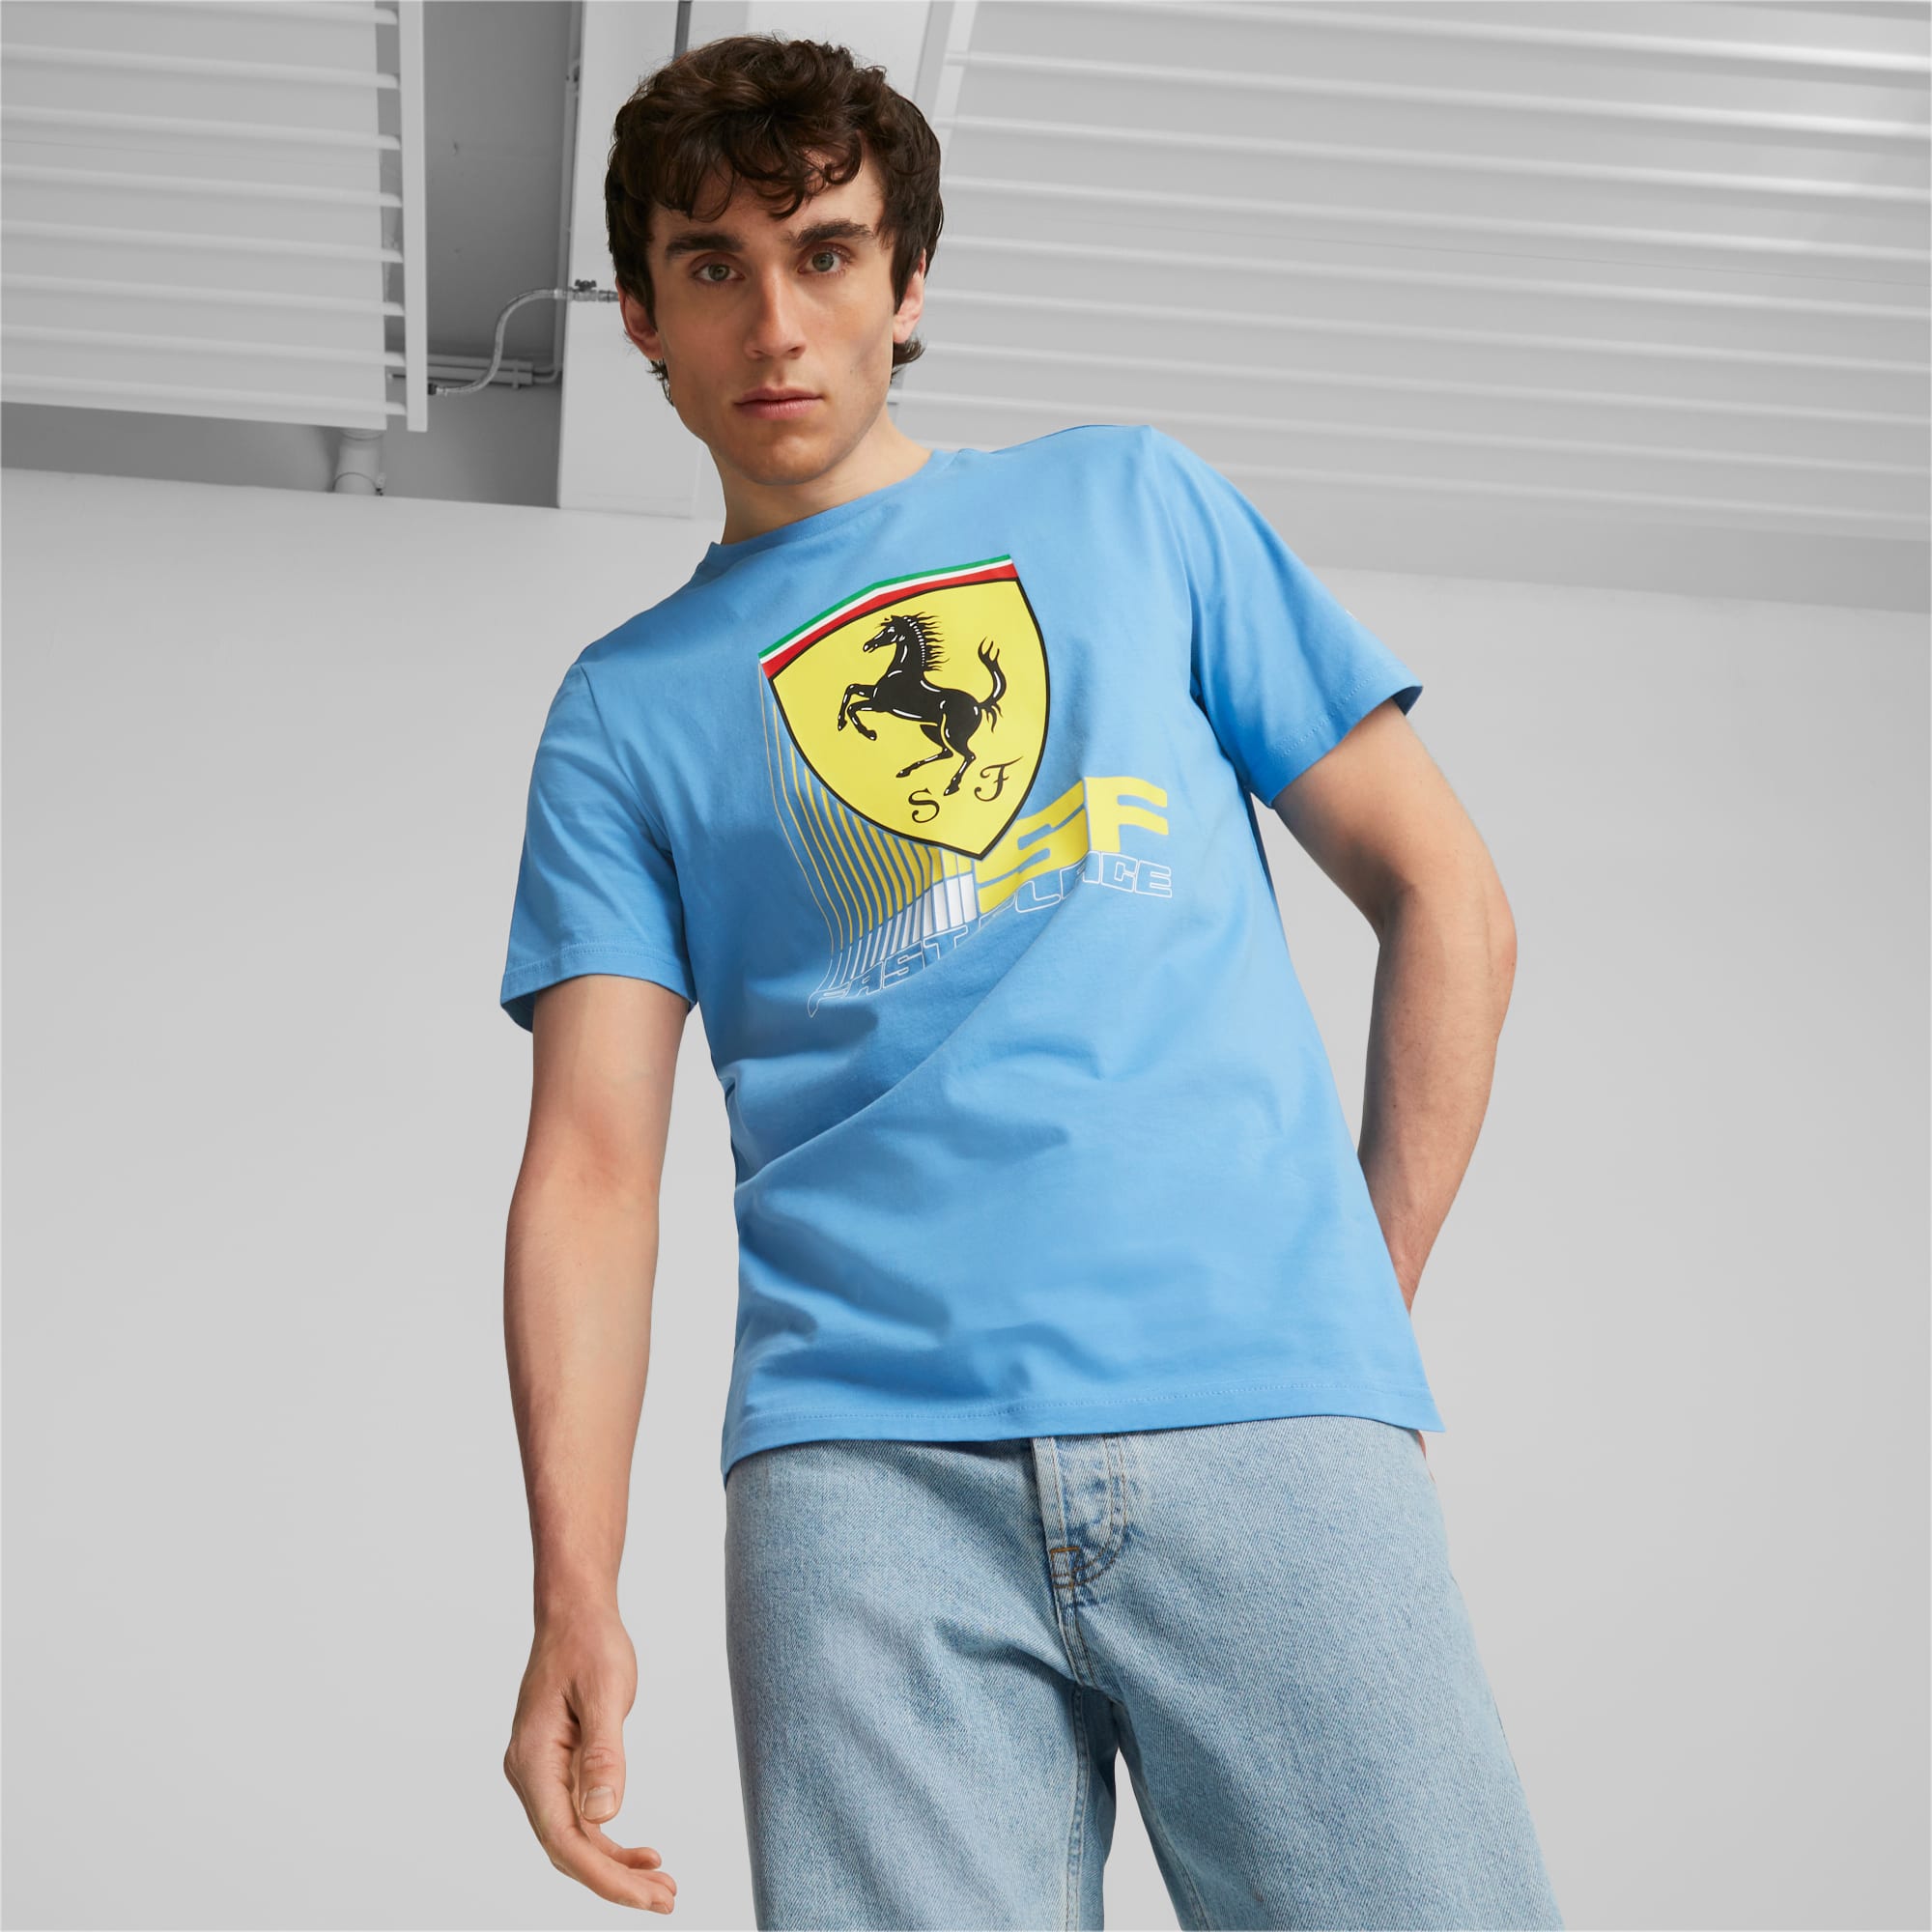 Camiseta de automovilismo Scuderia Ferrari para hombre